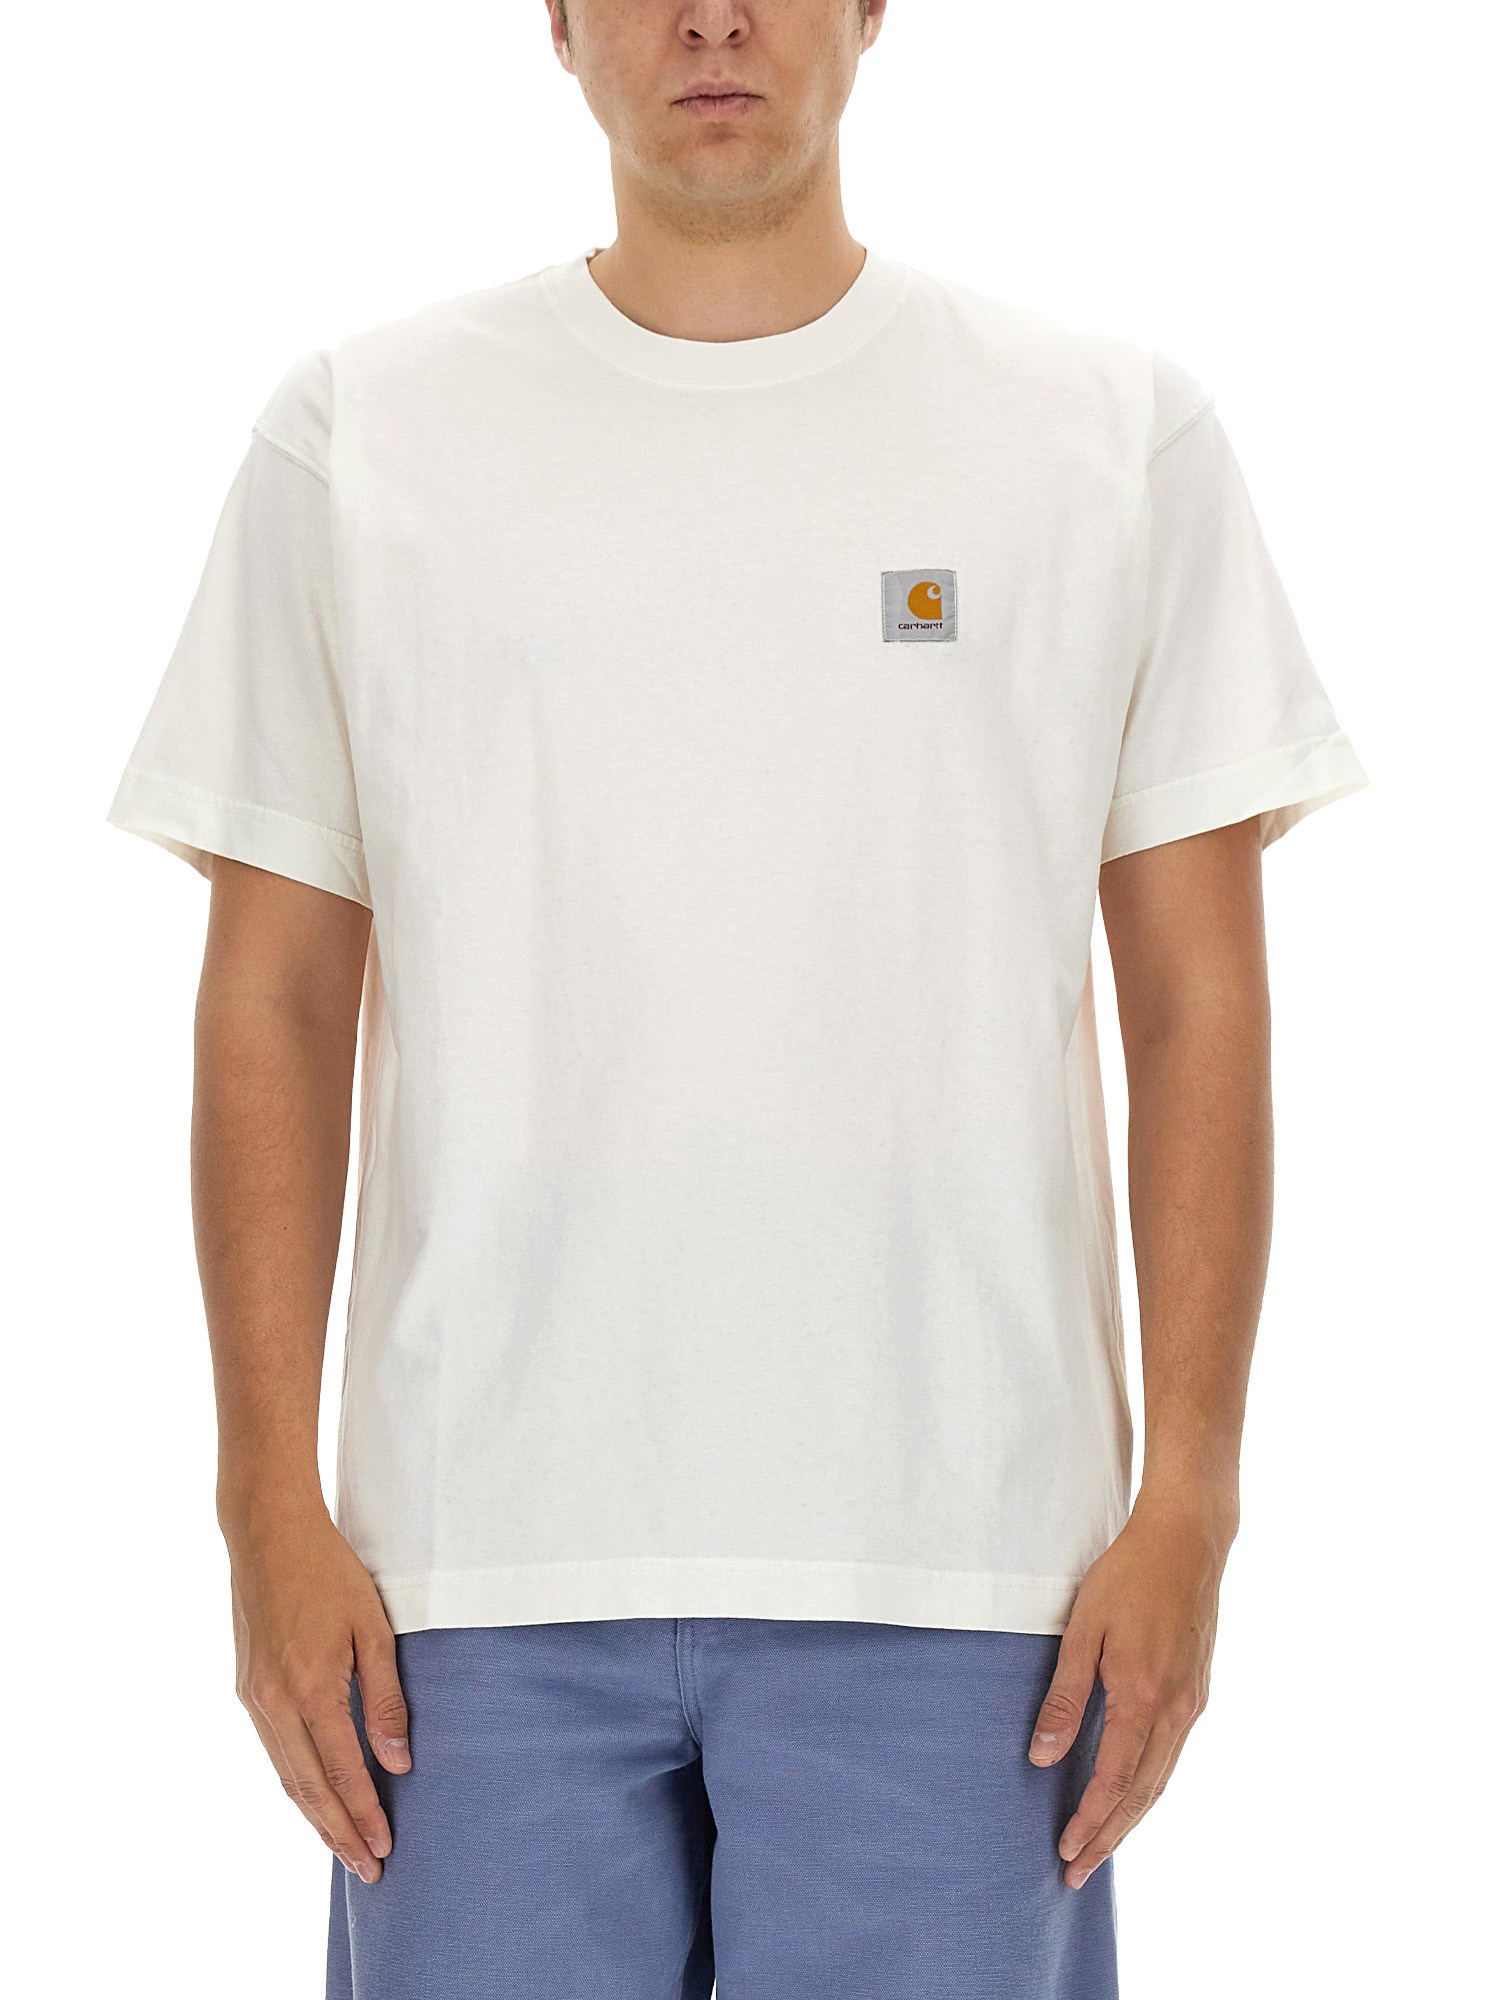 Carhartt WIP carhartt wip nelson t-shirt